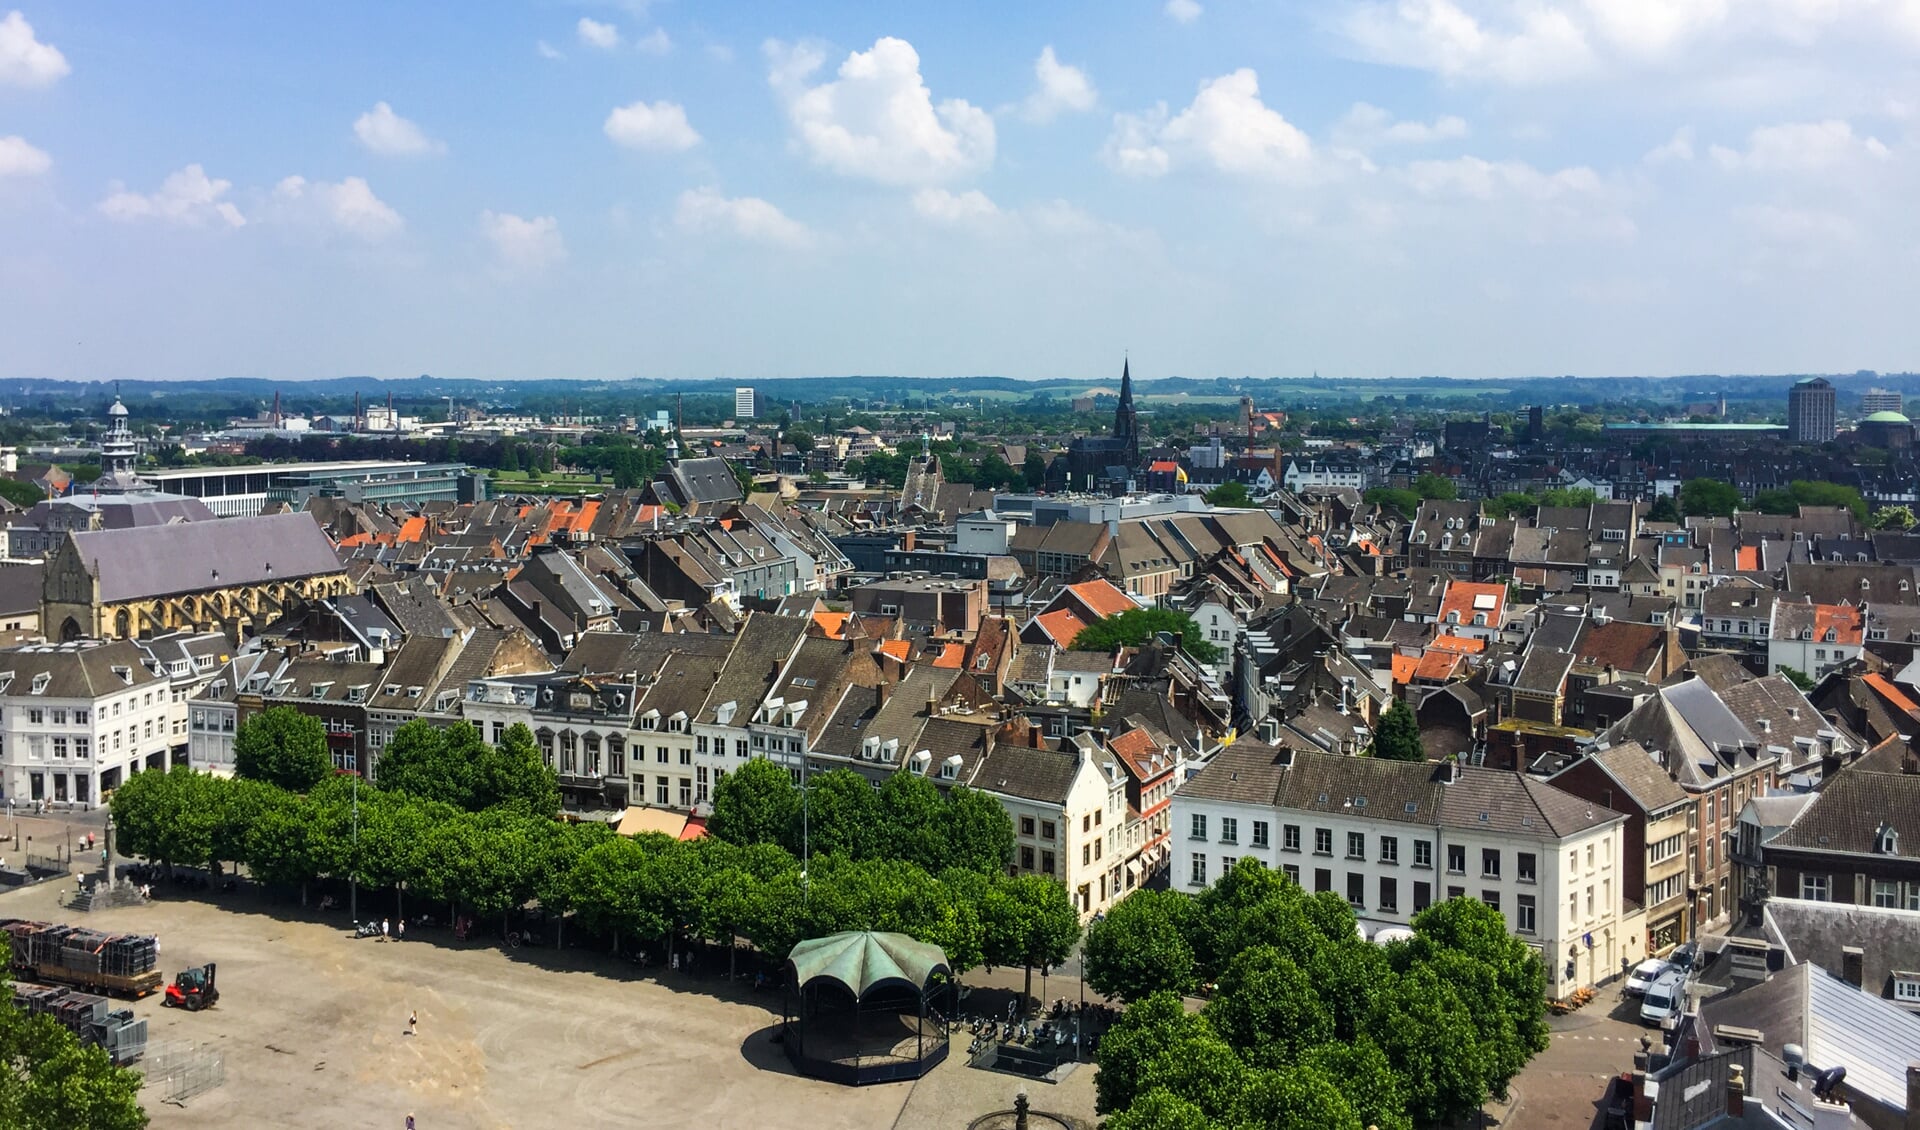 Huurwoning in bijvoorbeeld Maastricht geen probleem? Aparte inschrijving is nodig. (Foto: AdobeStock)